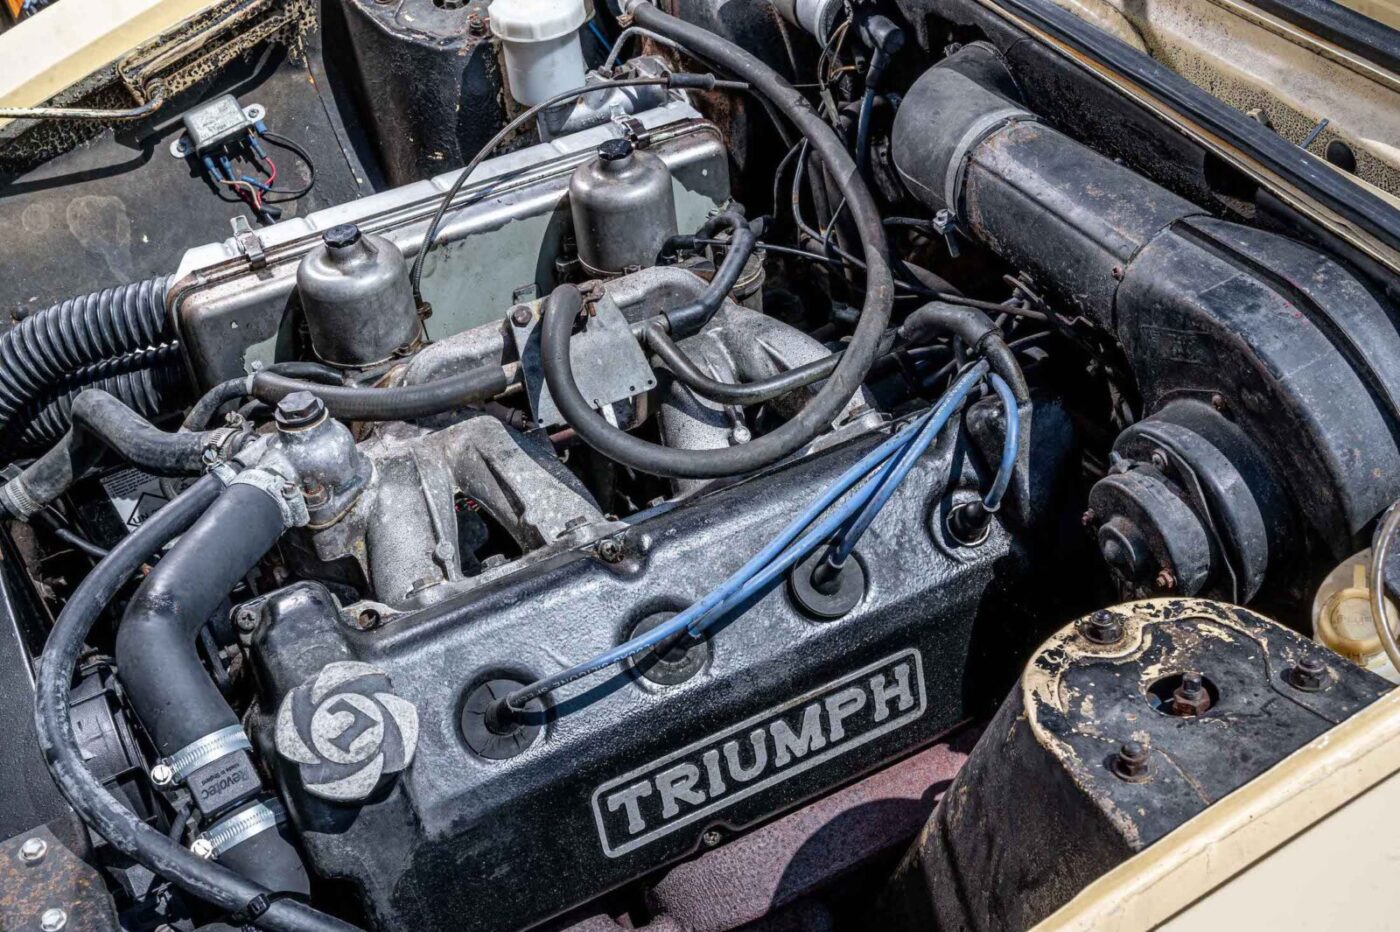 Triumph Dolomite Sprint engine